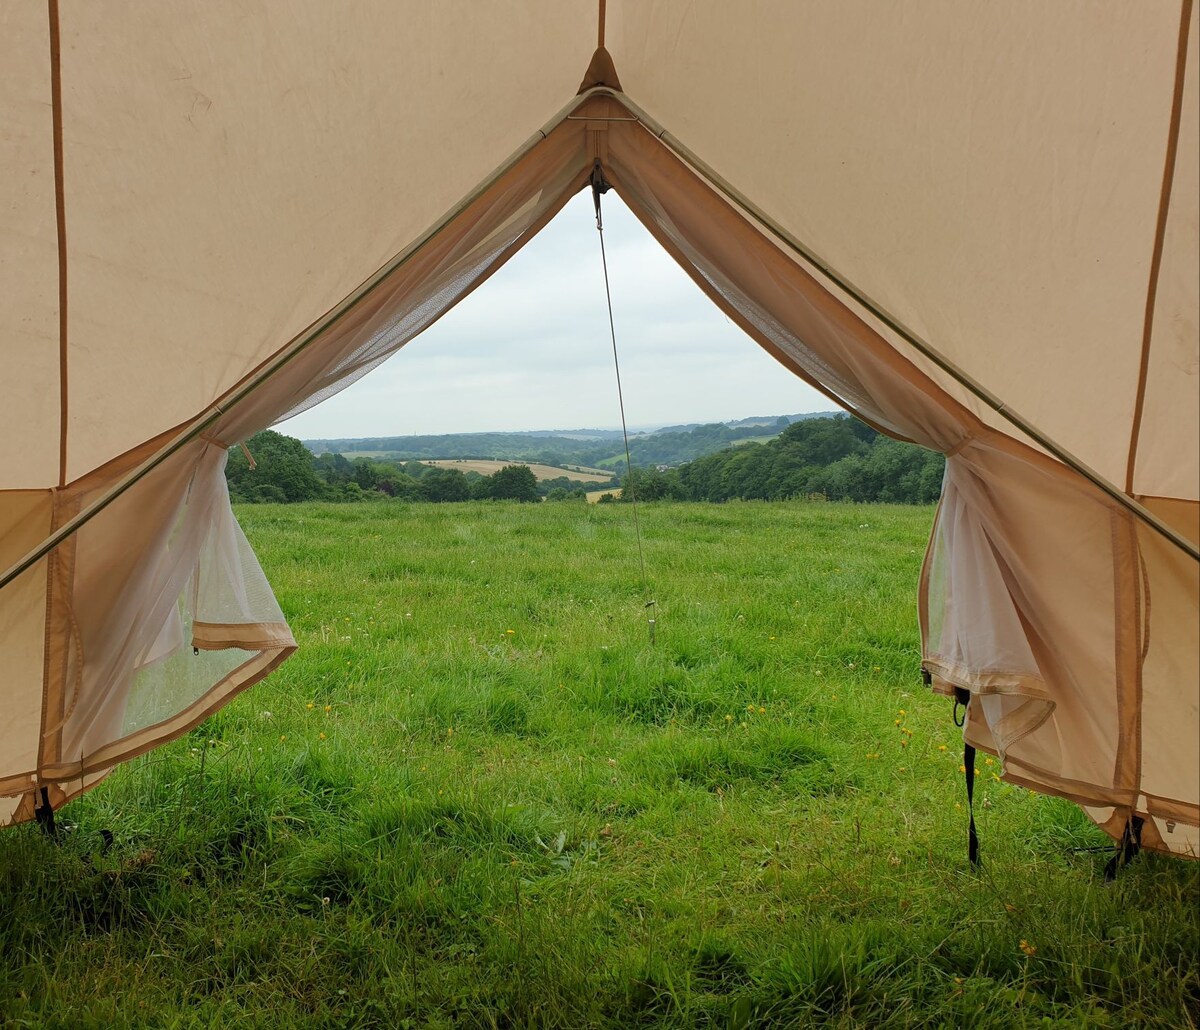 宾夕法尼亚草甸农场的华丽钟形帐篷。Freckle 's